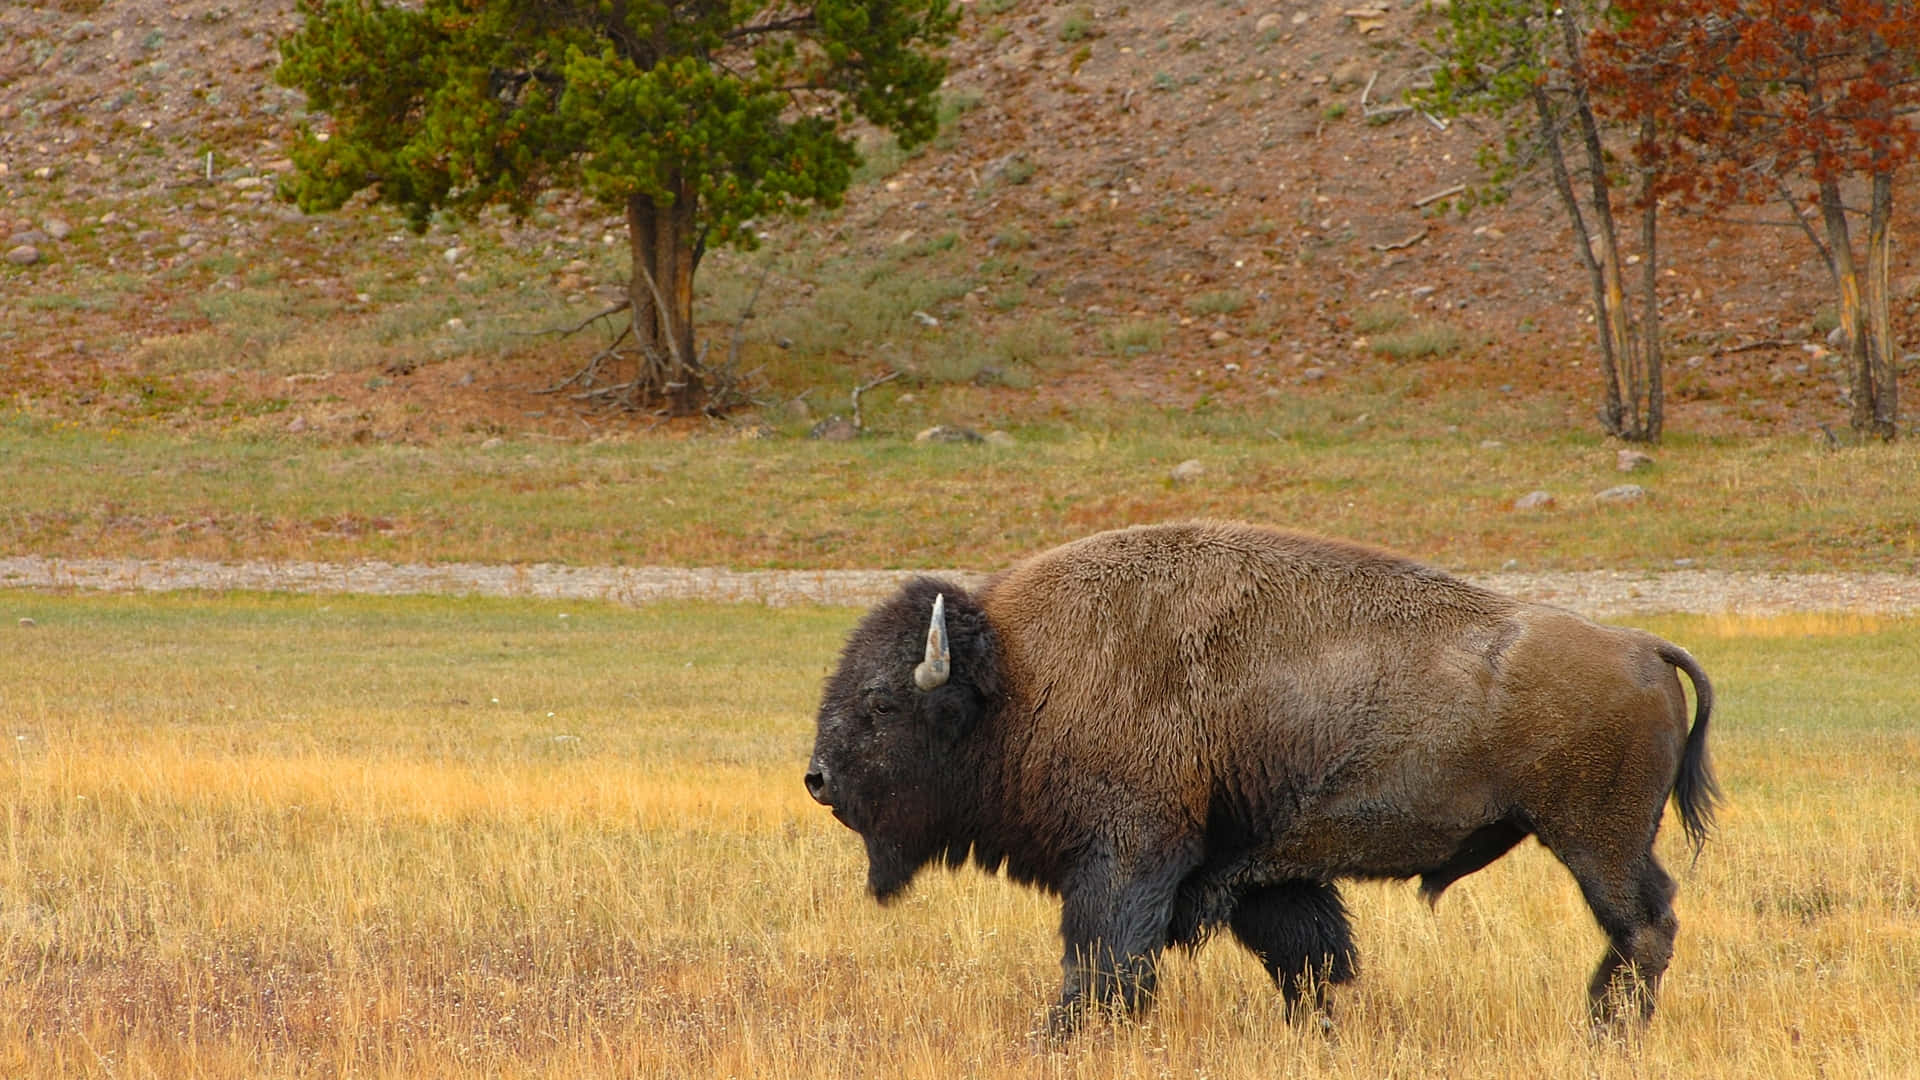 Wild Animals Bison On Grass Picture